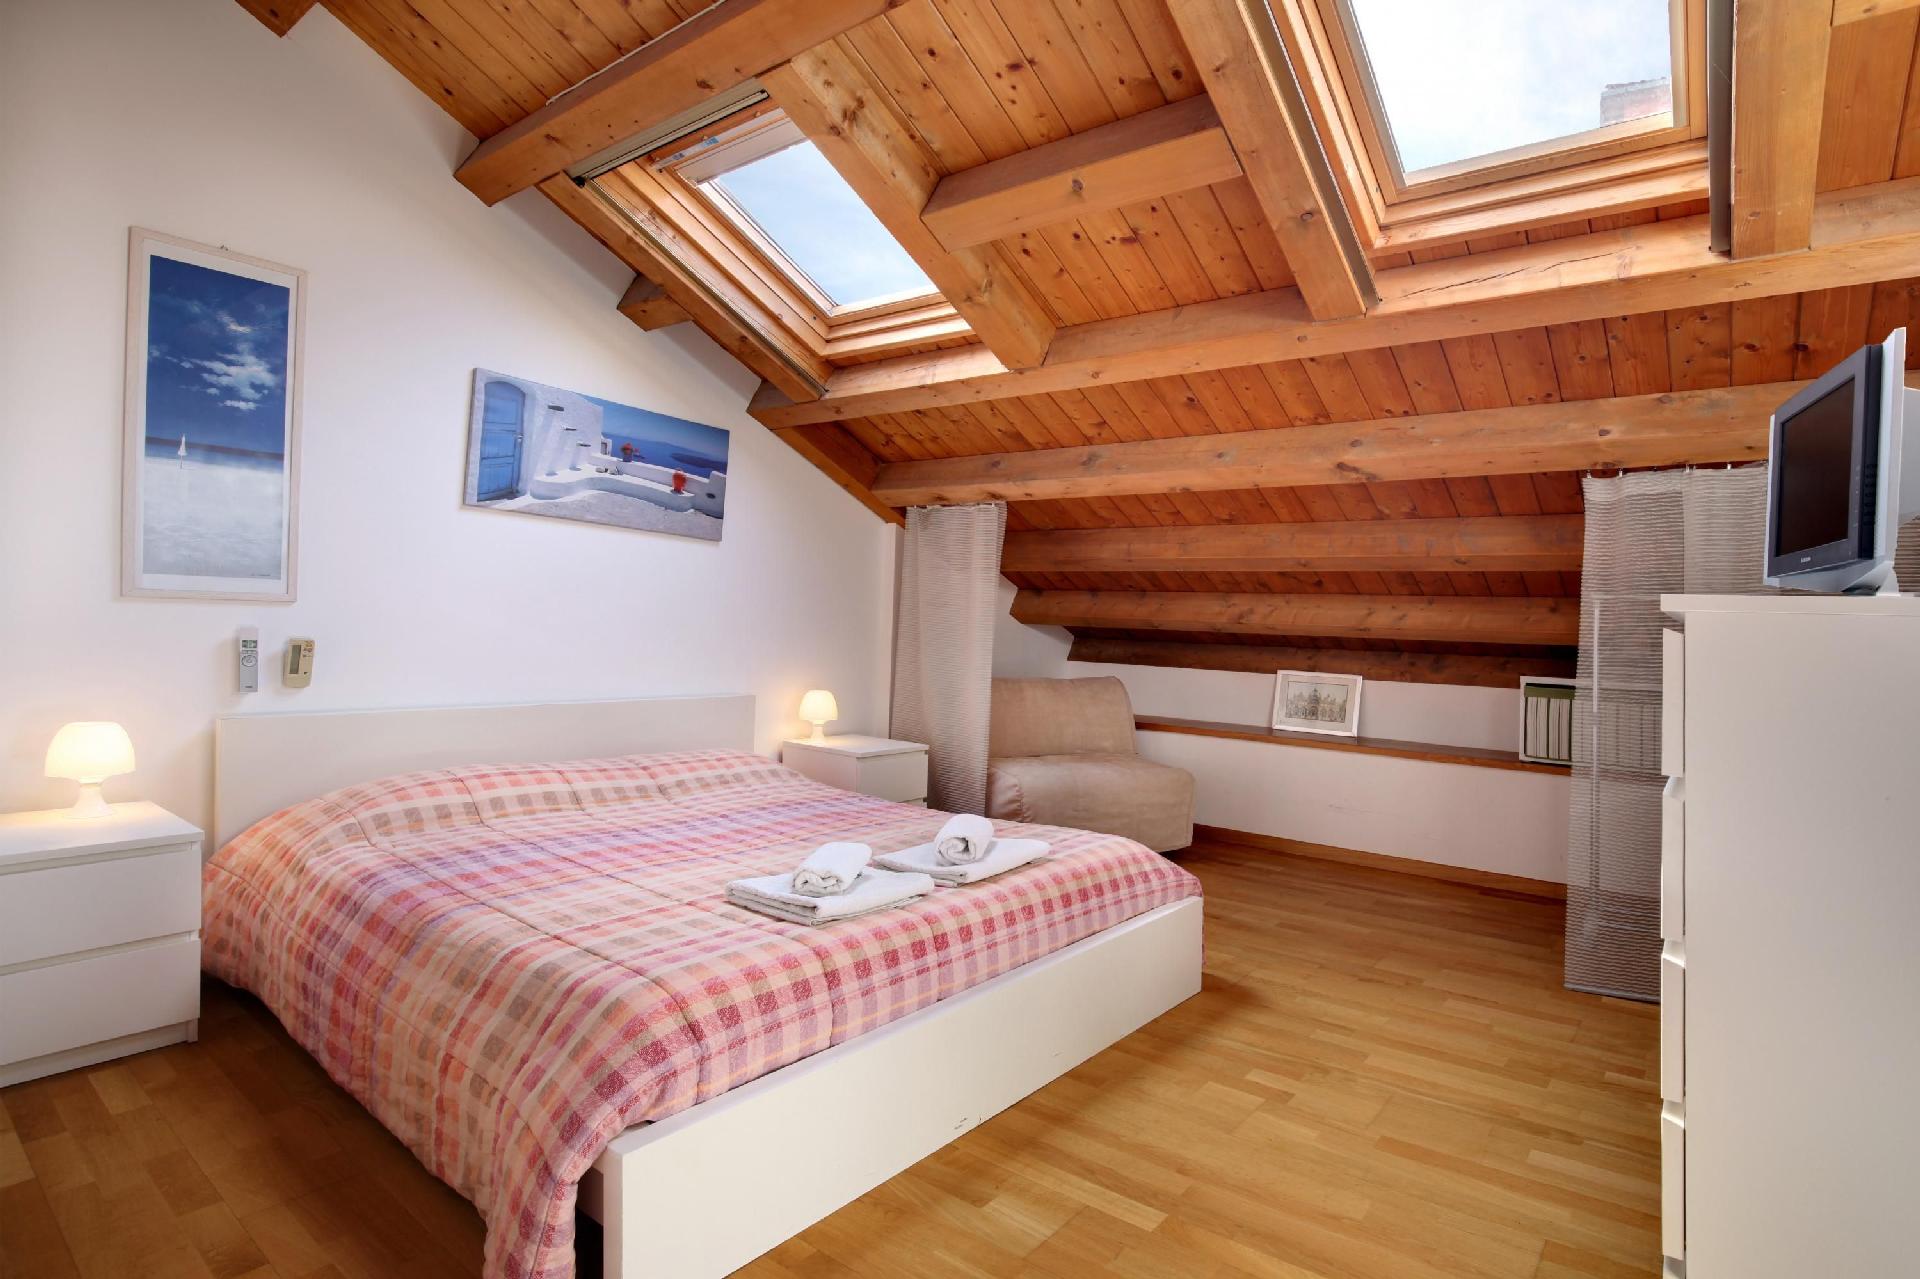 Ferienwohnung für 4 Personen ca. 60 m² i Ferienhaus in Italien